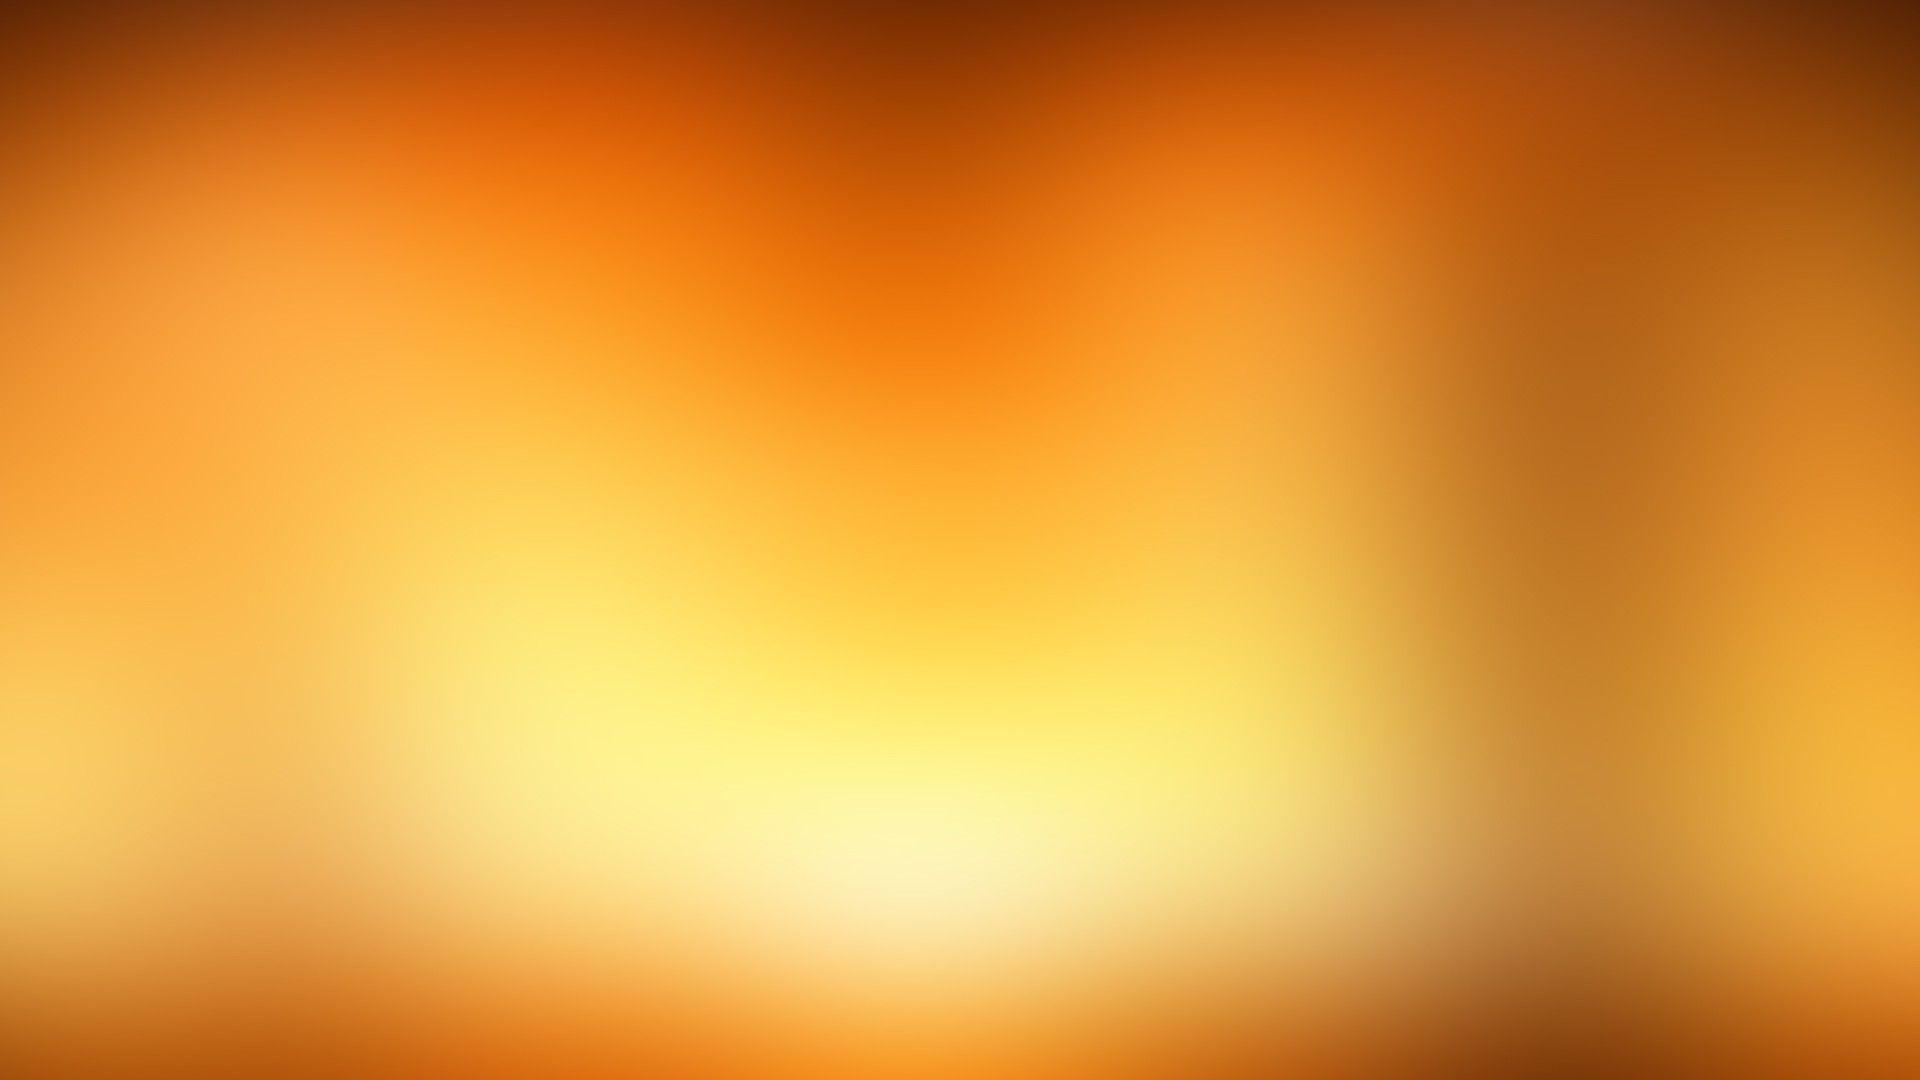 Hãy tưởng tượng một chiếc máy tính có hình nền gradient vàng duyên dáng, rực rỡ và bắt mắt. Sự kết hợp hoàn hảo giữa màu vàng óng ánh và gradient mềm mại cho ra đời một hình nền đáng yêu. Xem hình ảnh để khám phá thêm vẻ đẹp tuyệt vời.